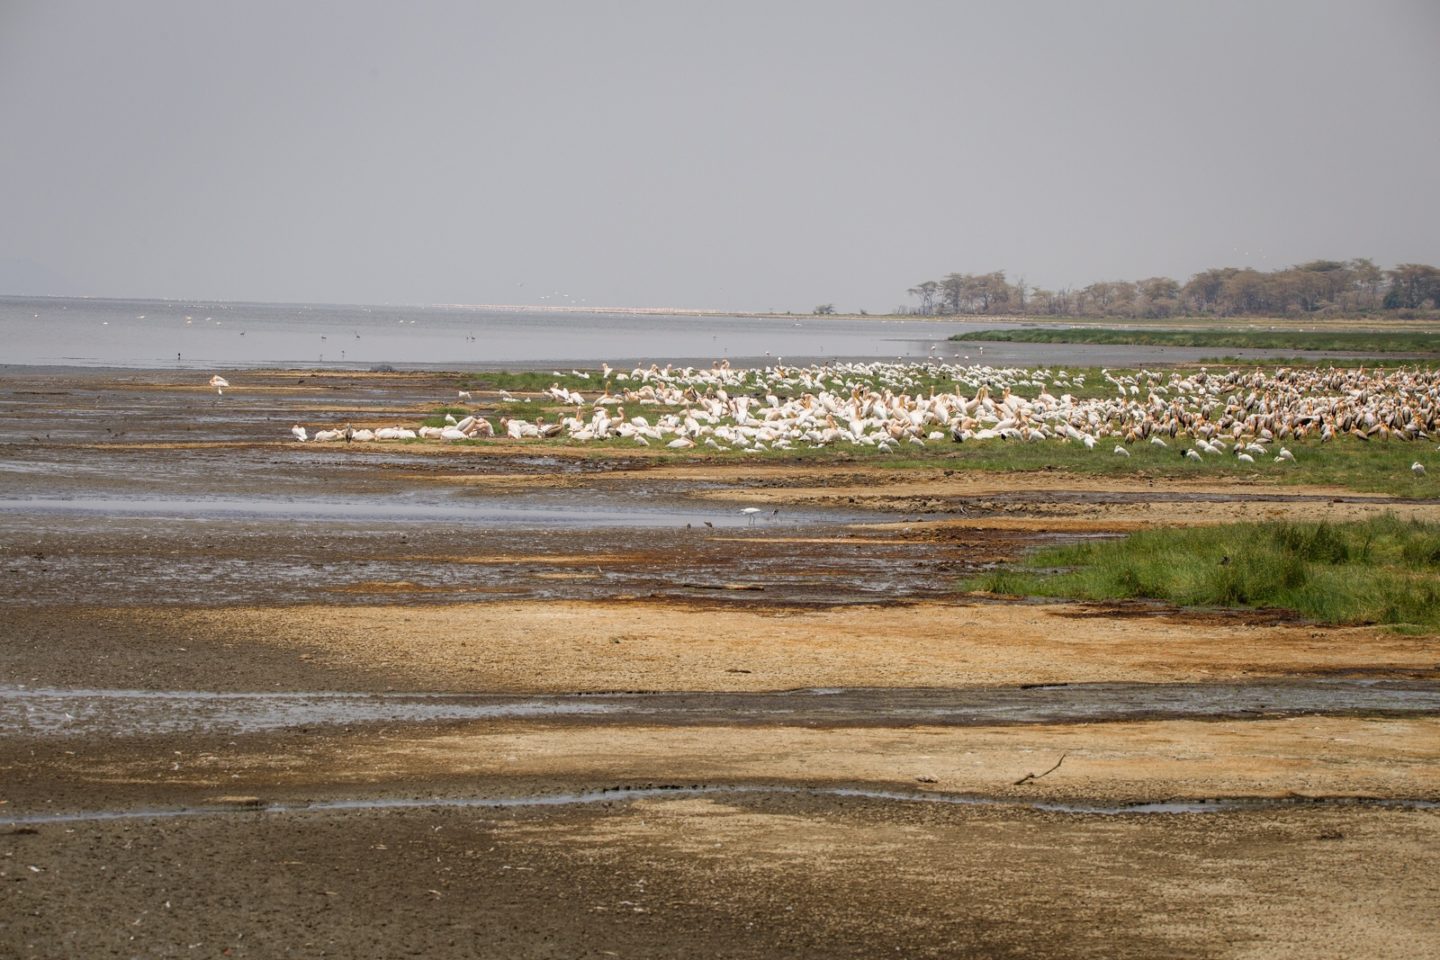 Bird colony on the shore of Lake Manyara.